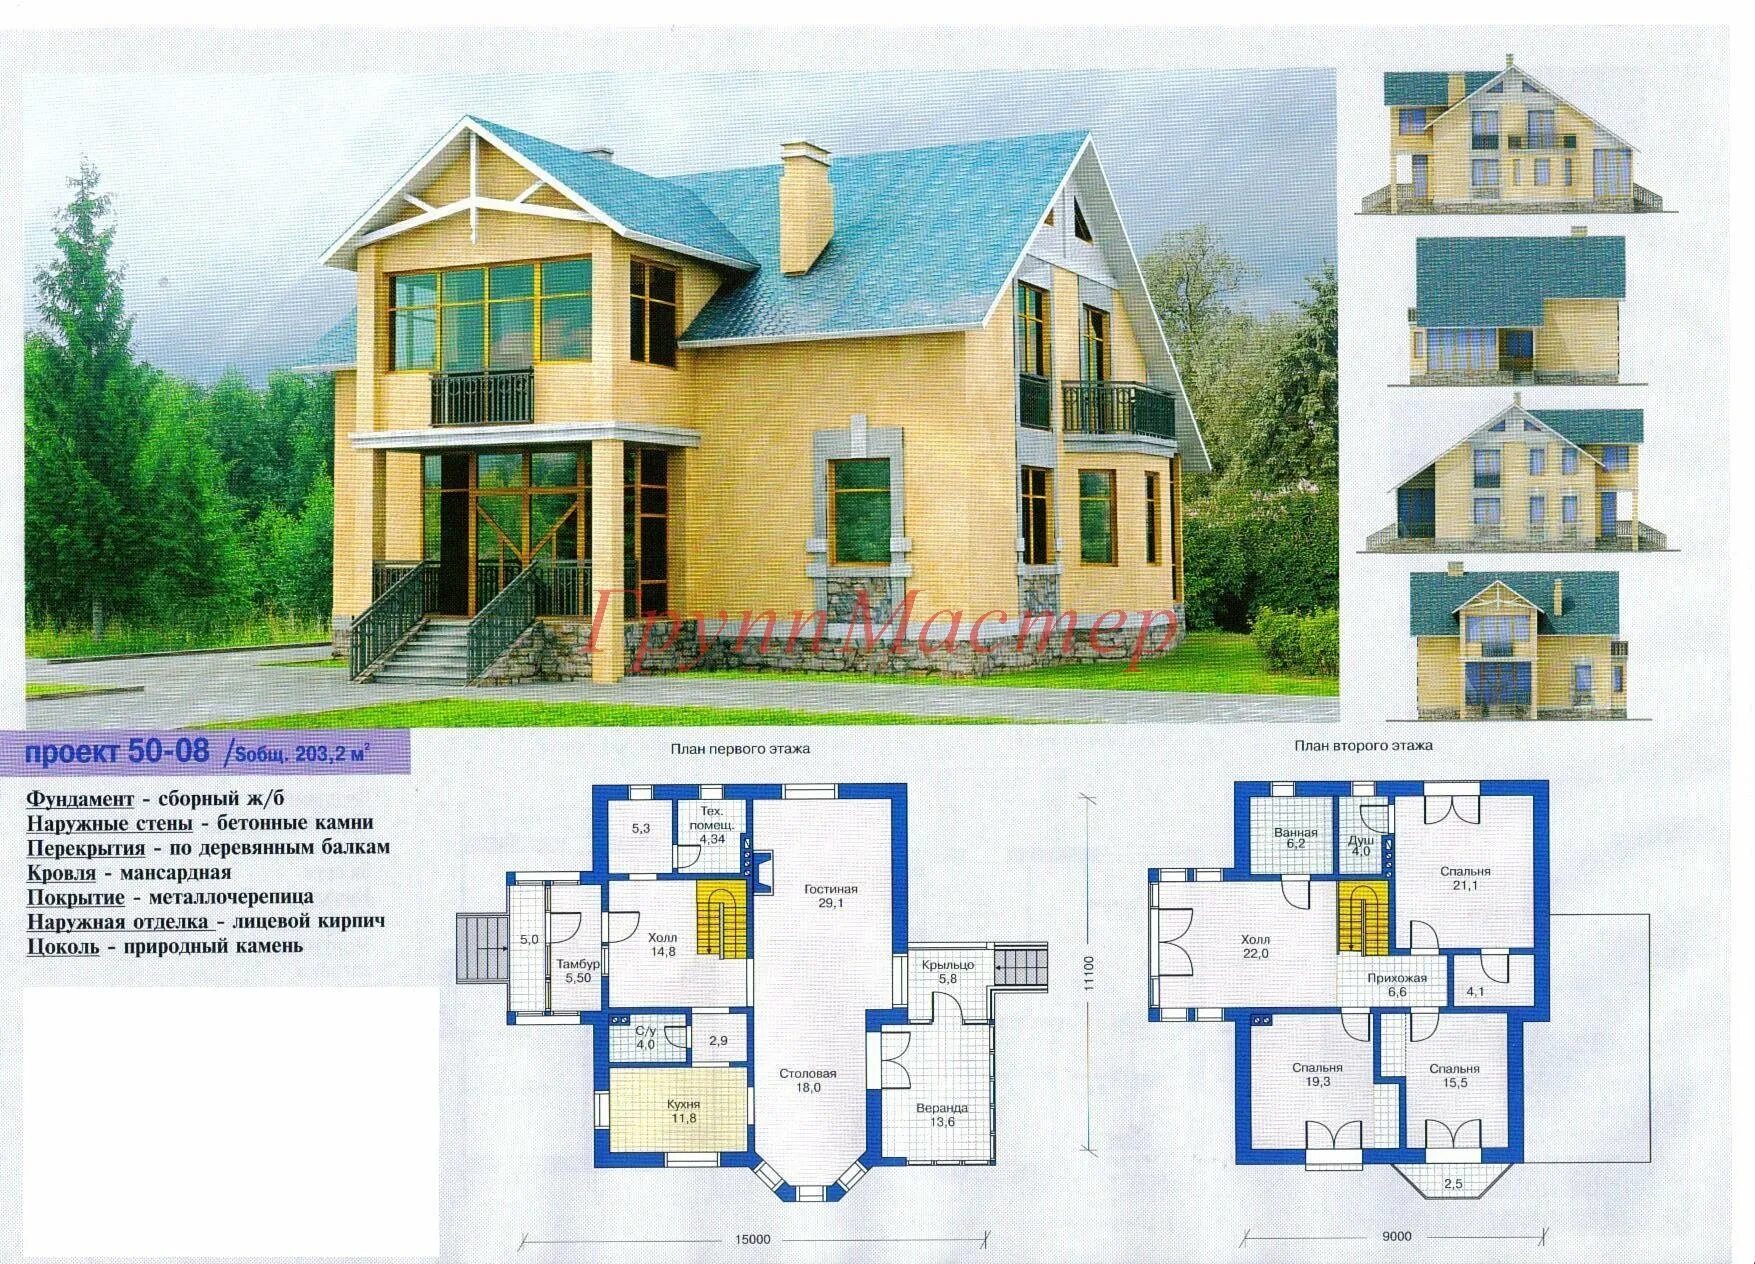 Найти бесплатный проект дома. План коттеджа. Проект коттеджа с размерами. Жилой дом проект. Проект коттеджа с планом.